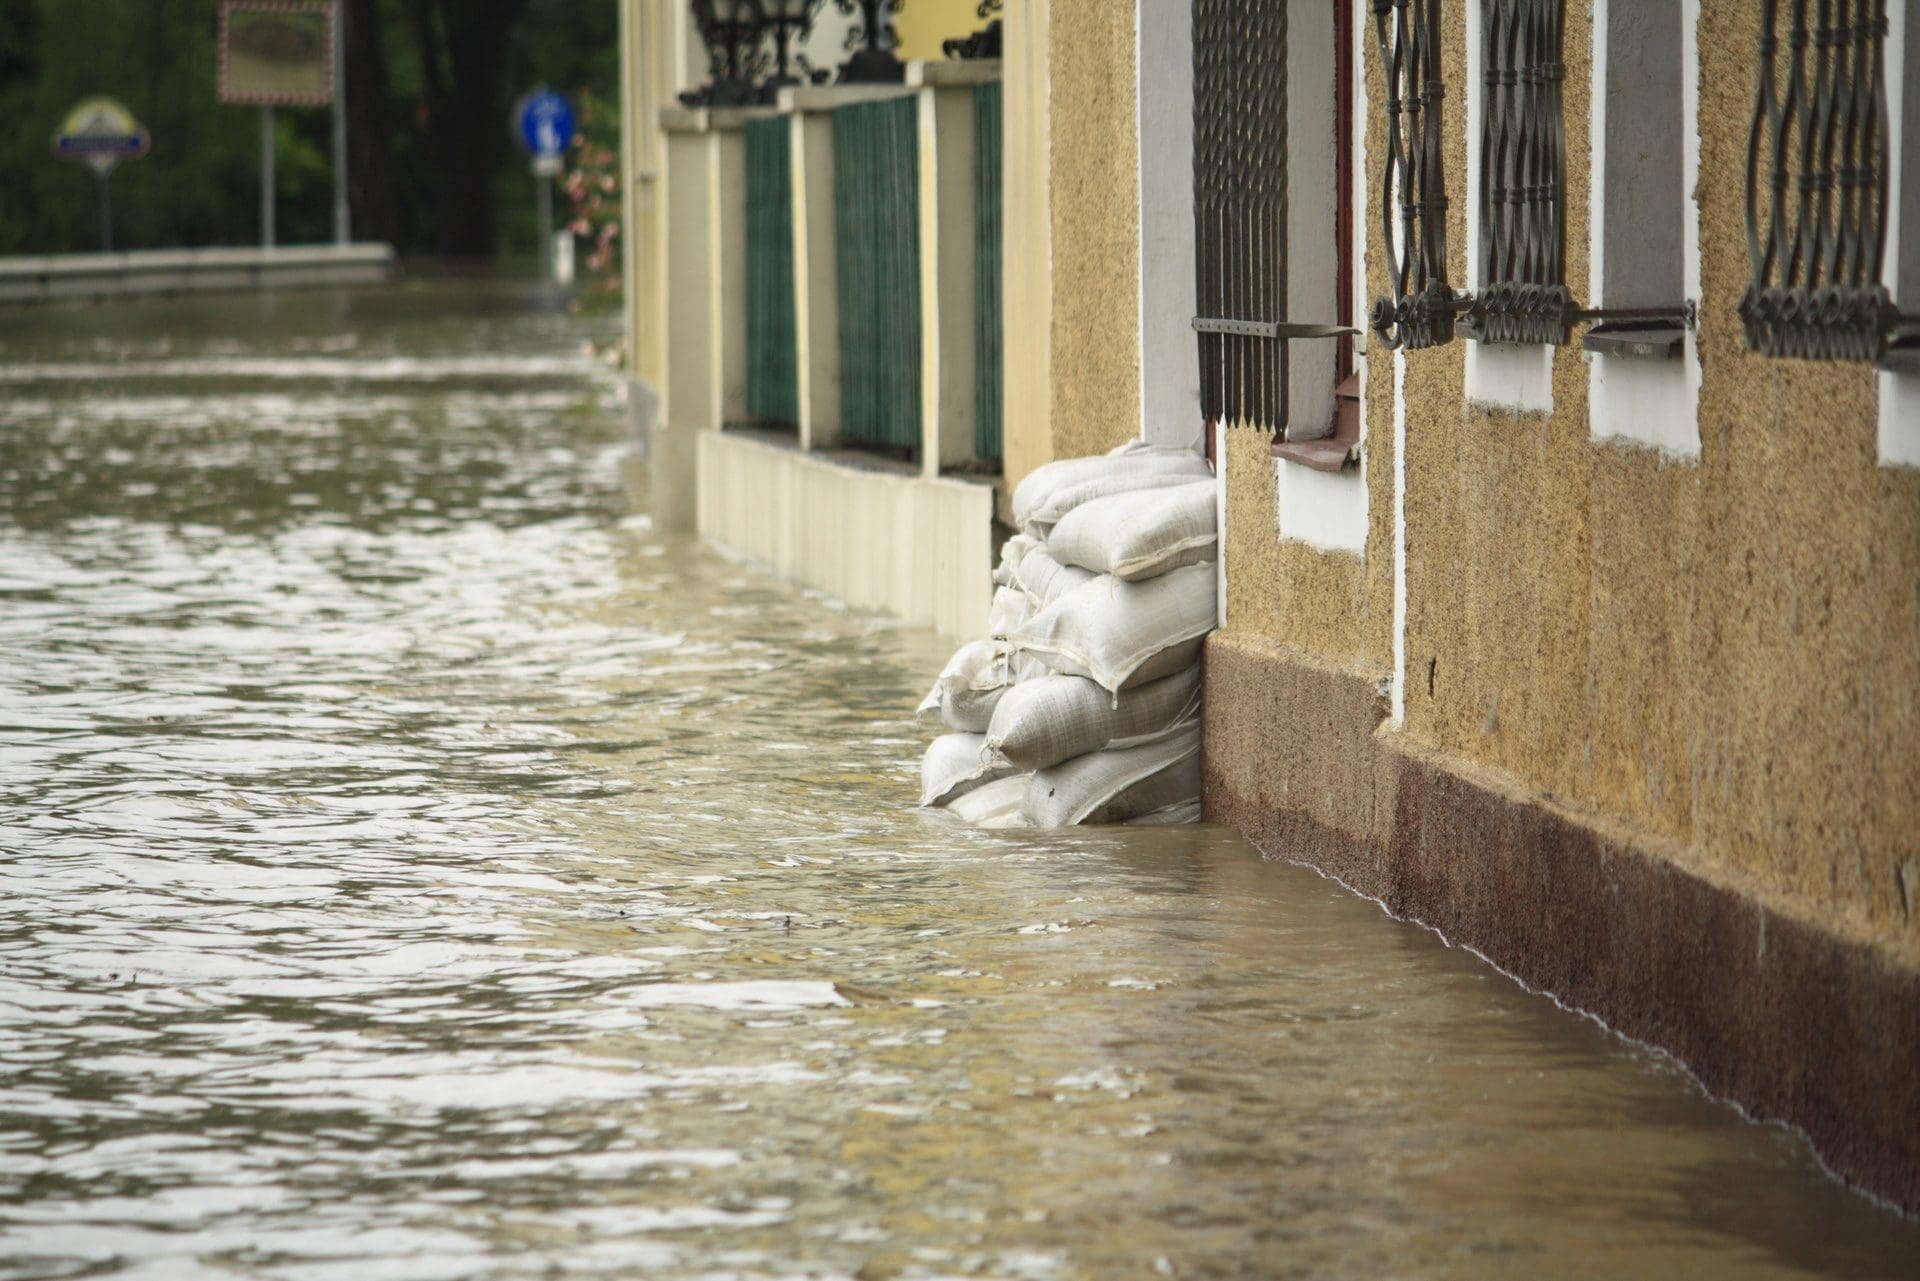 Überschwemmungen und Hochwasser sind in manchen Regionen nicht mehr versicherbar - auch nicht mit Elementarversicherung Zusatz. Zu hoch waren in den letzten Jahren die Schäden für die Versicherer. (© NoA Production / Fotolia)